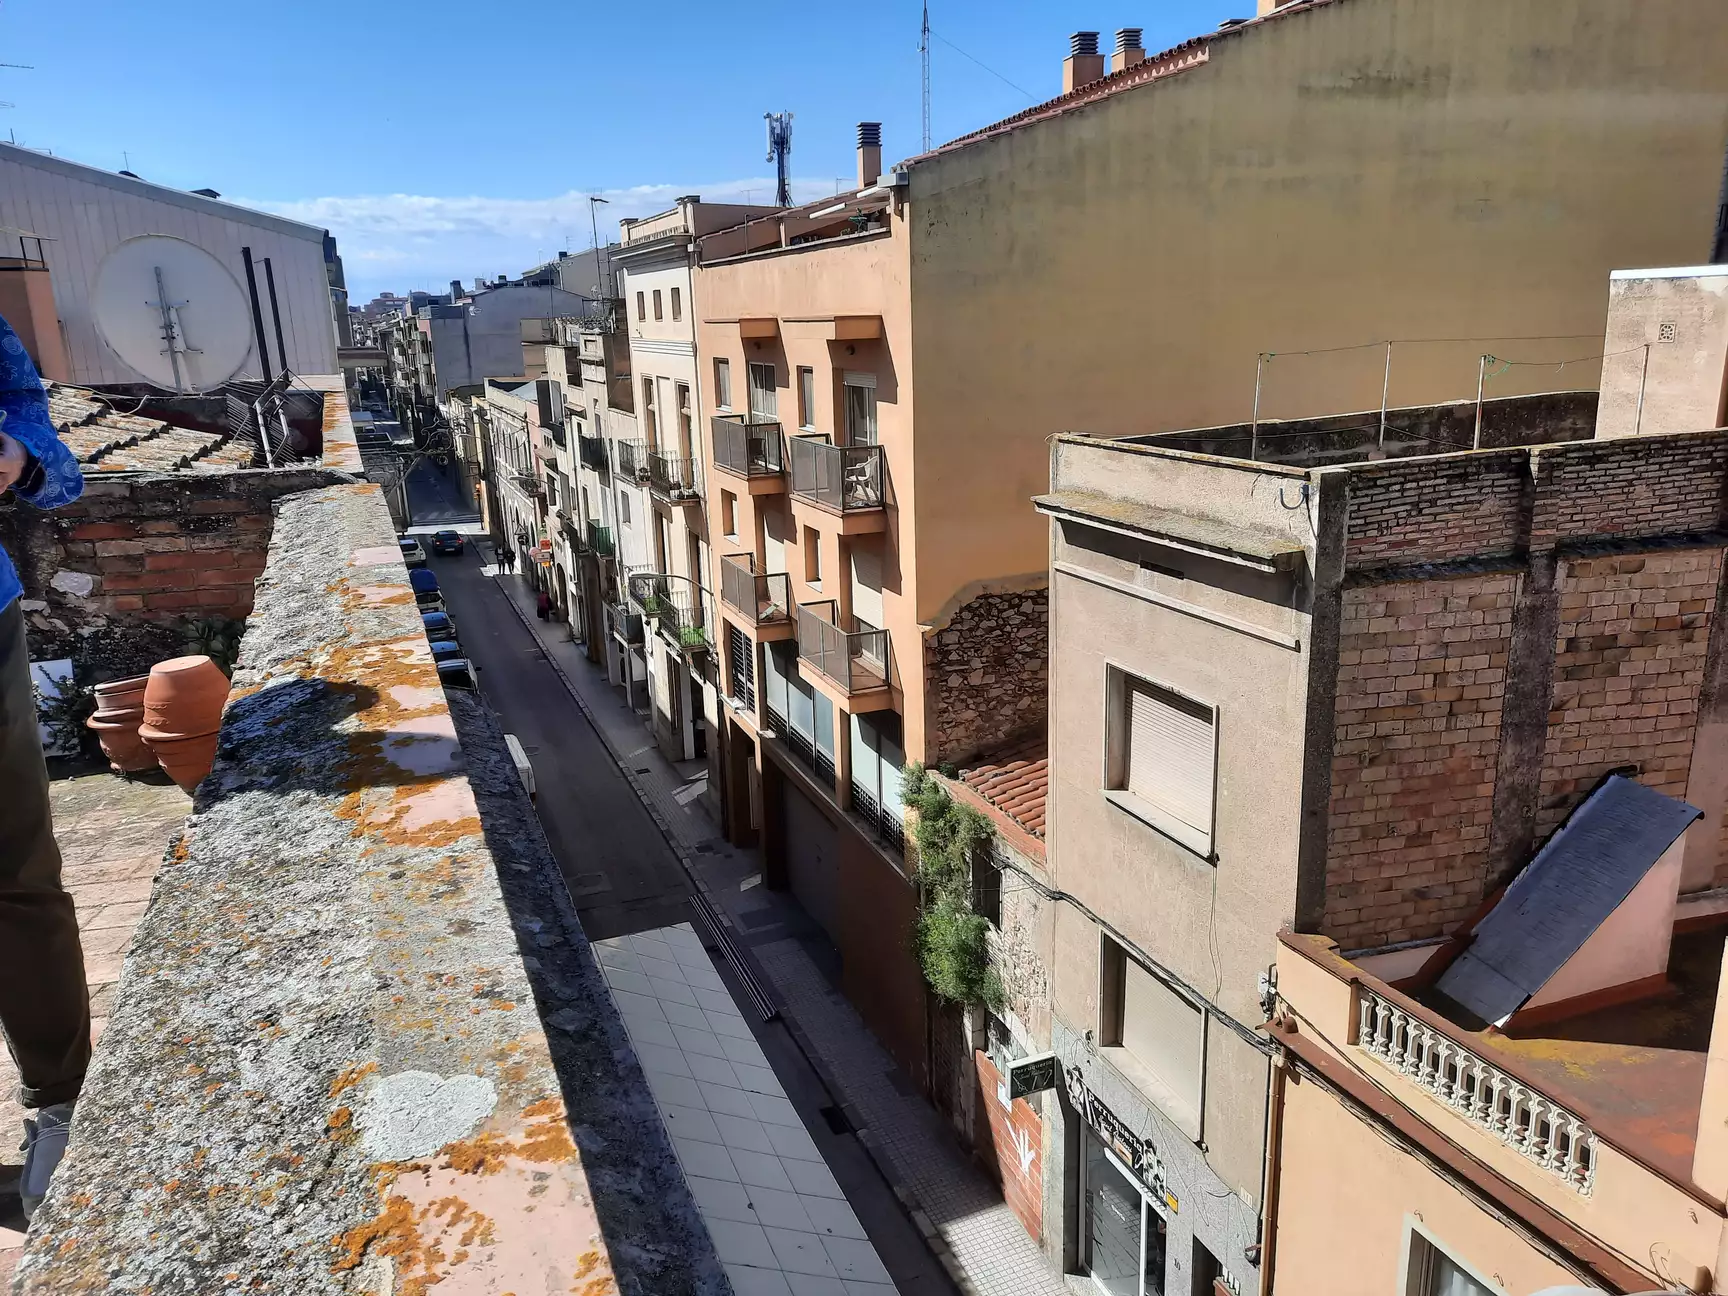 BANKANGEBOT: Wohnung zum Verkauf in Figueres. Lassen Sie sich diese Investitionsmöglichkeit nicht en